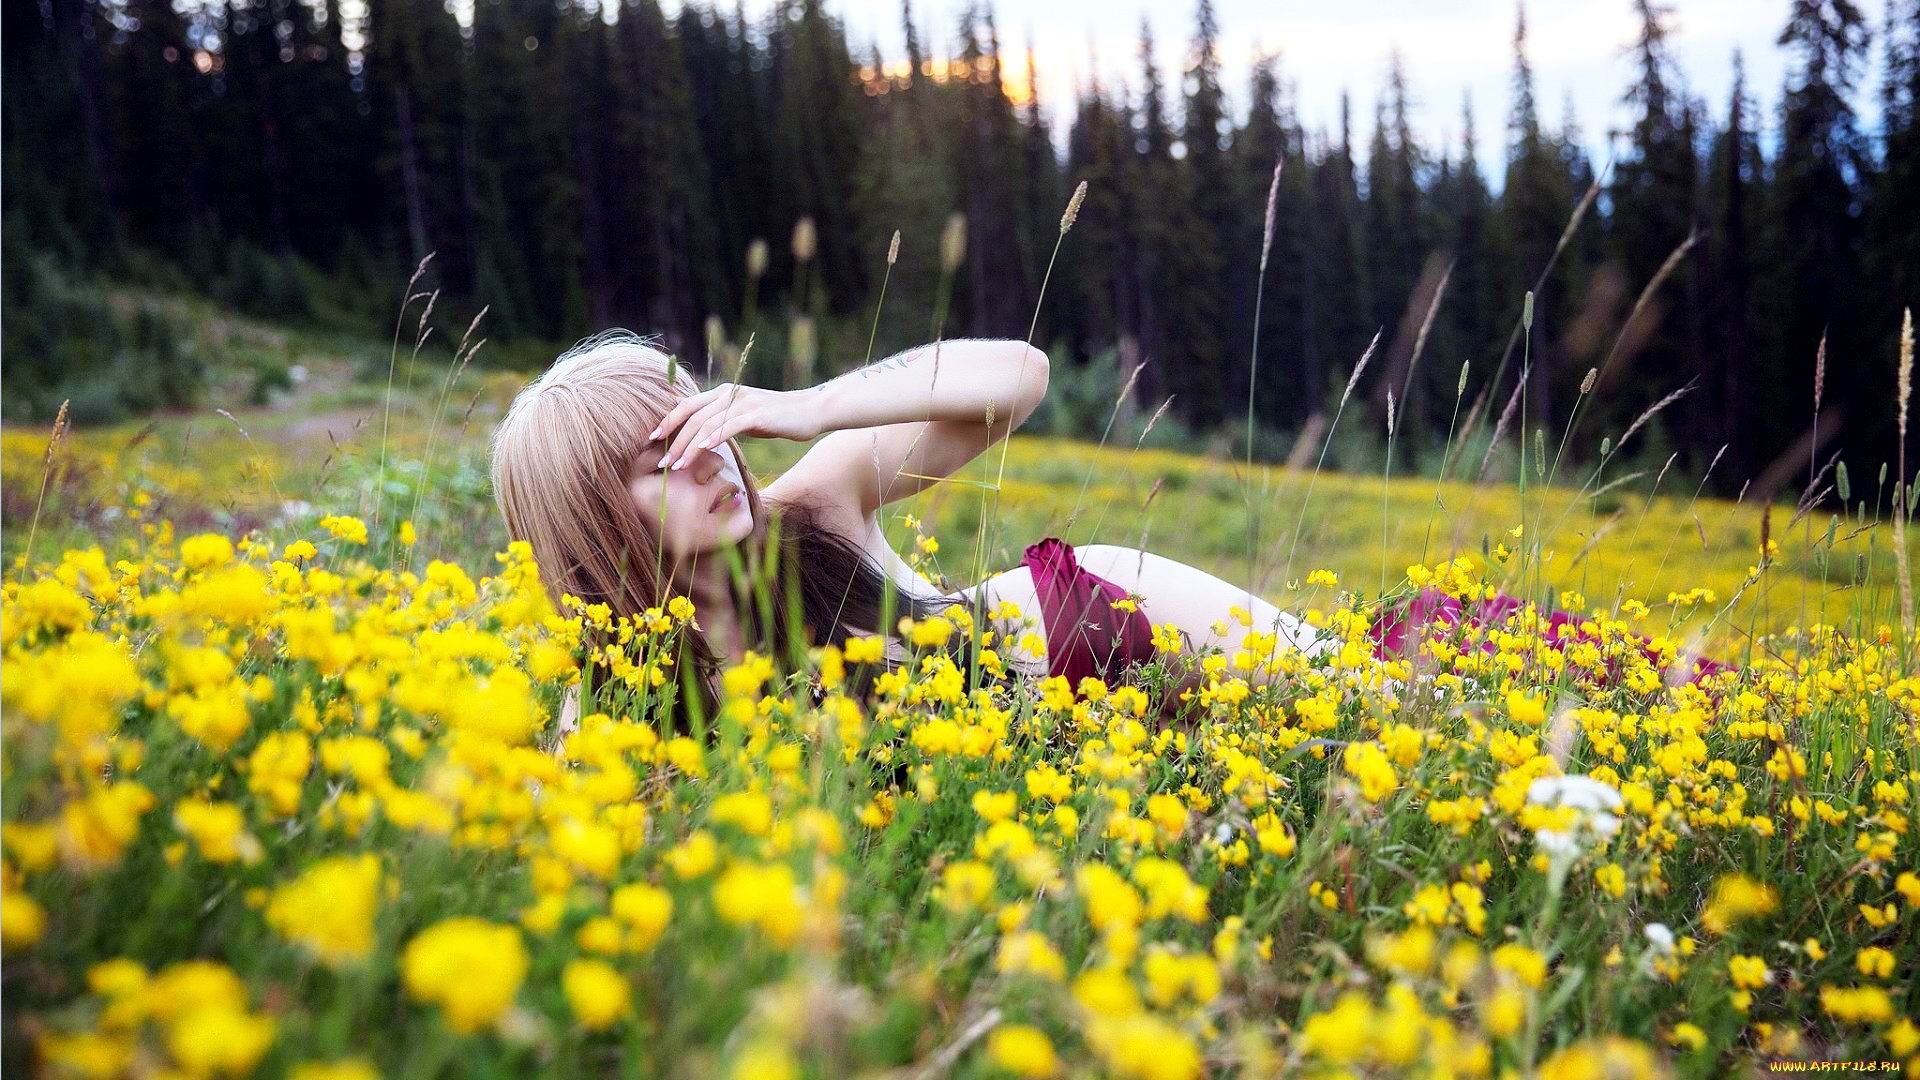 Симпатичная блондинка показывает попку в зеленой траве